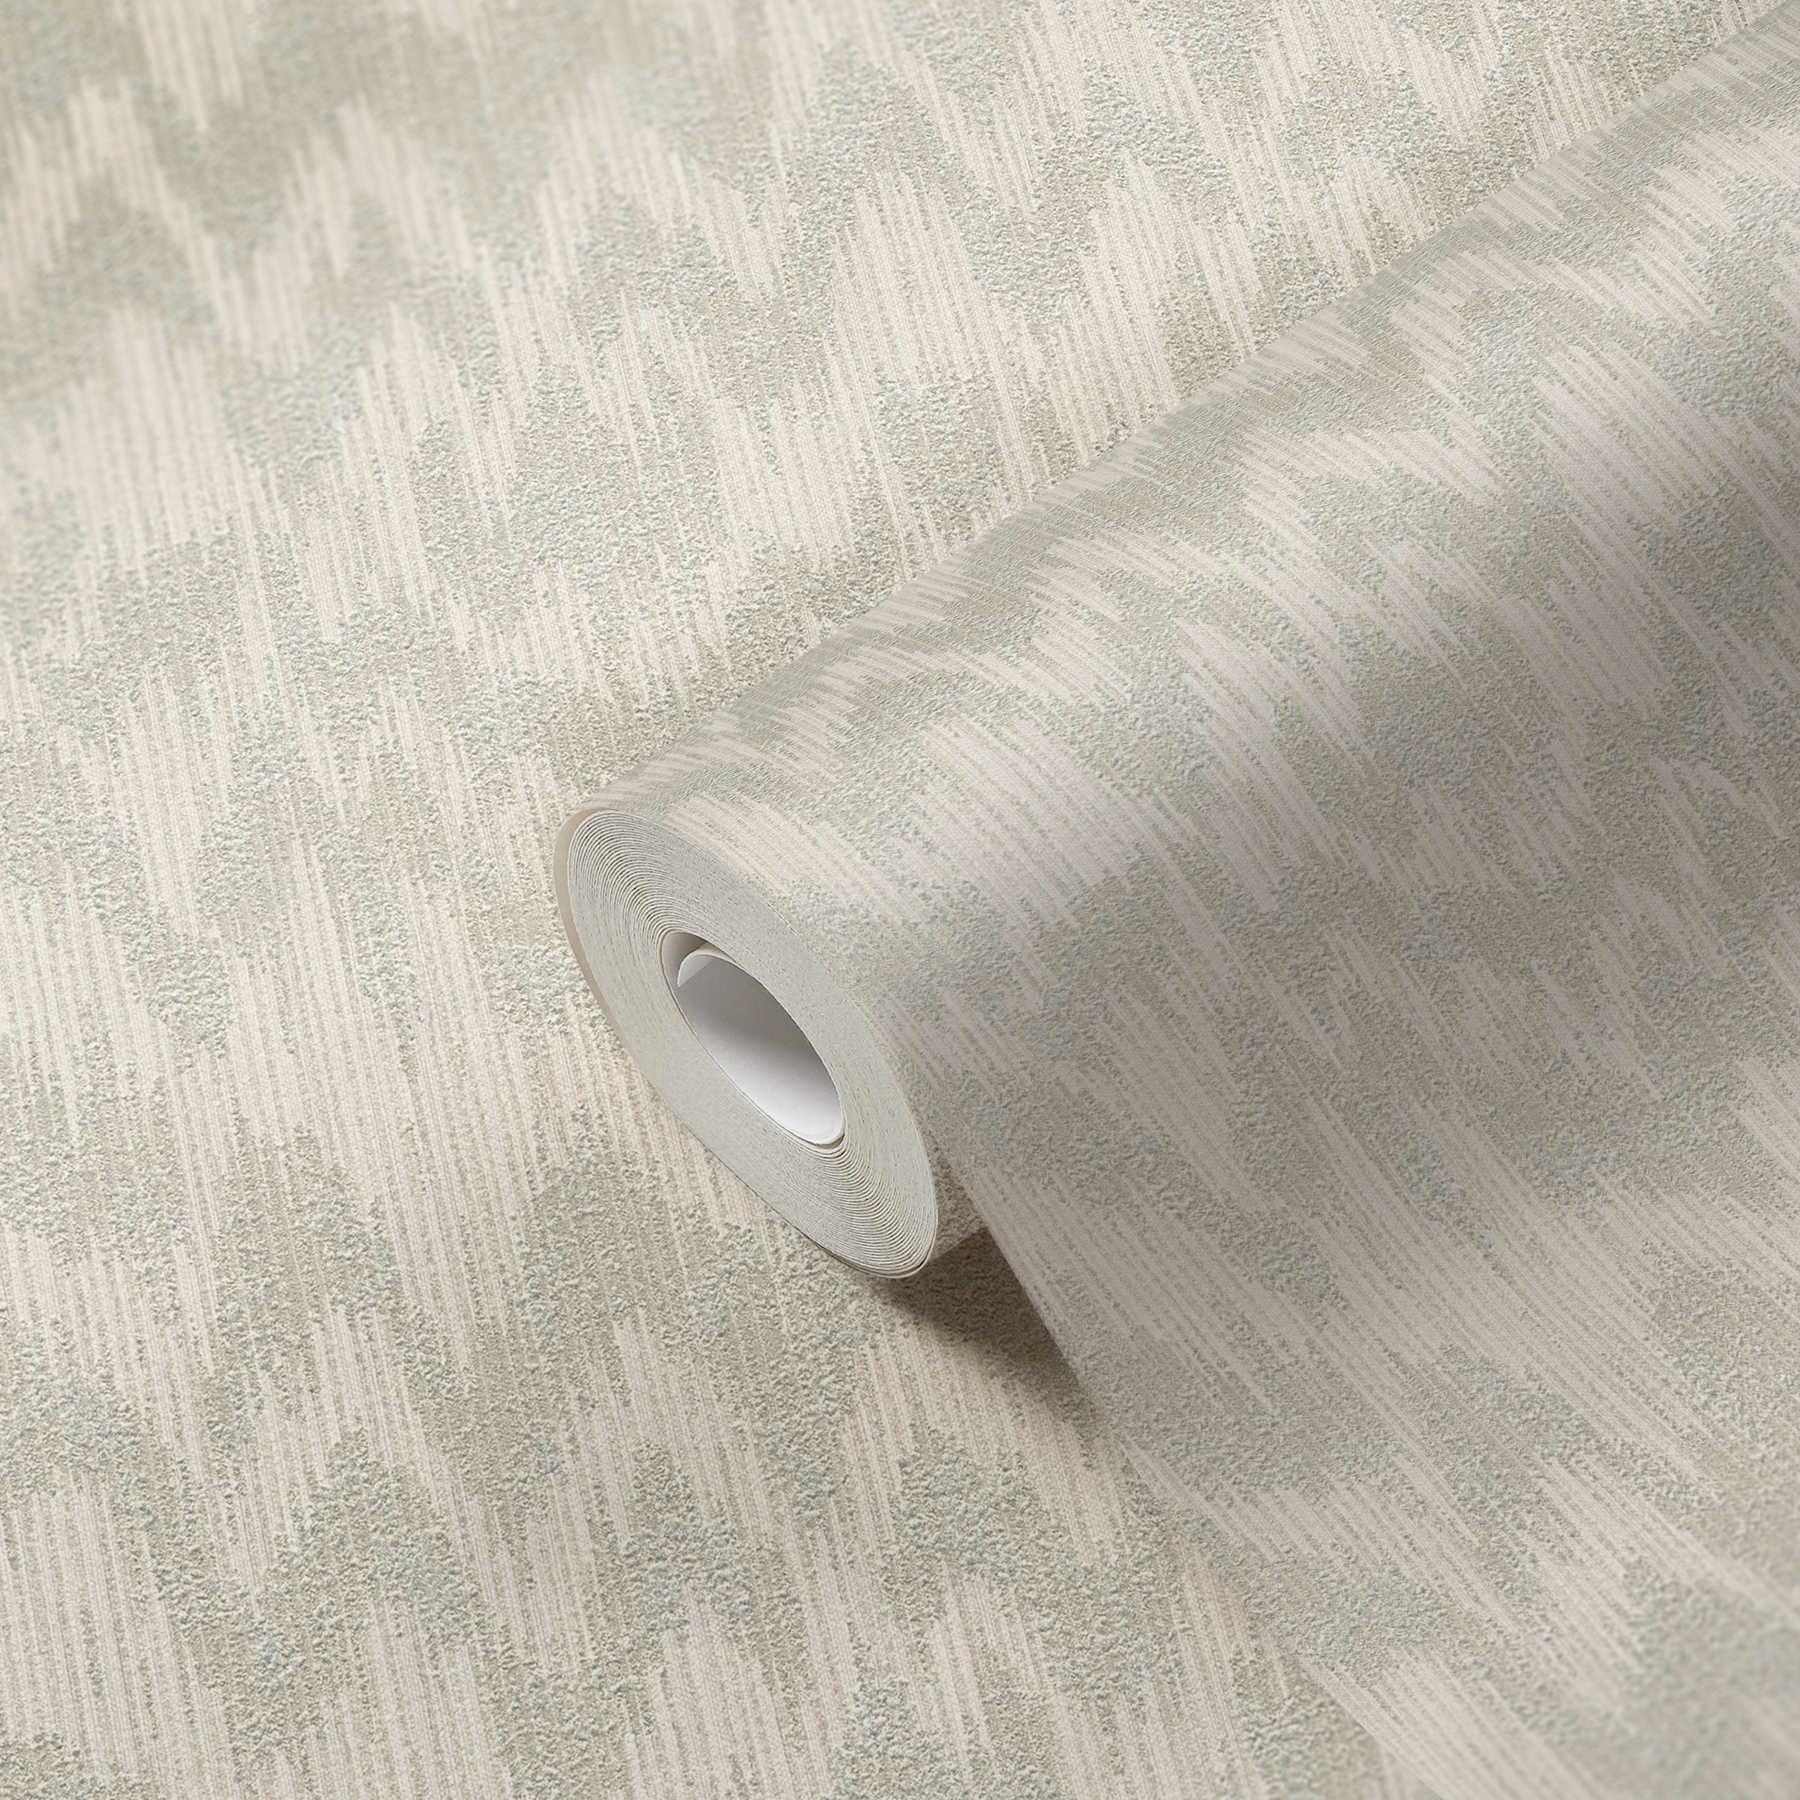             behang ikat patroon met textuureffect - beige, metallic
        